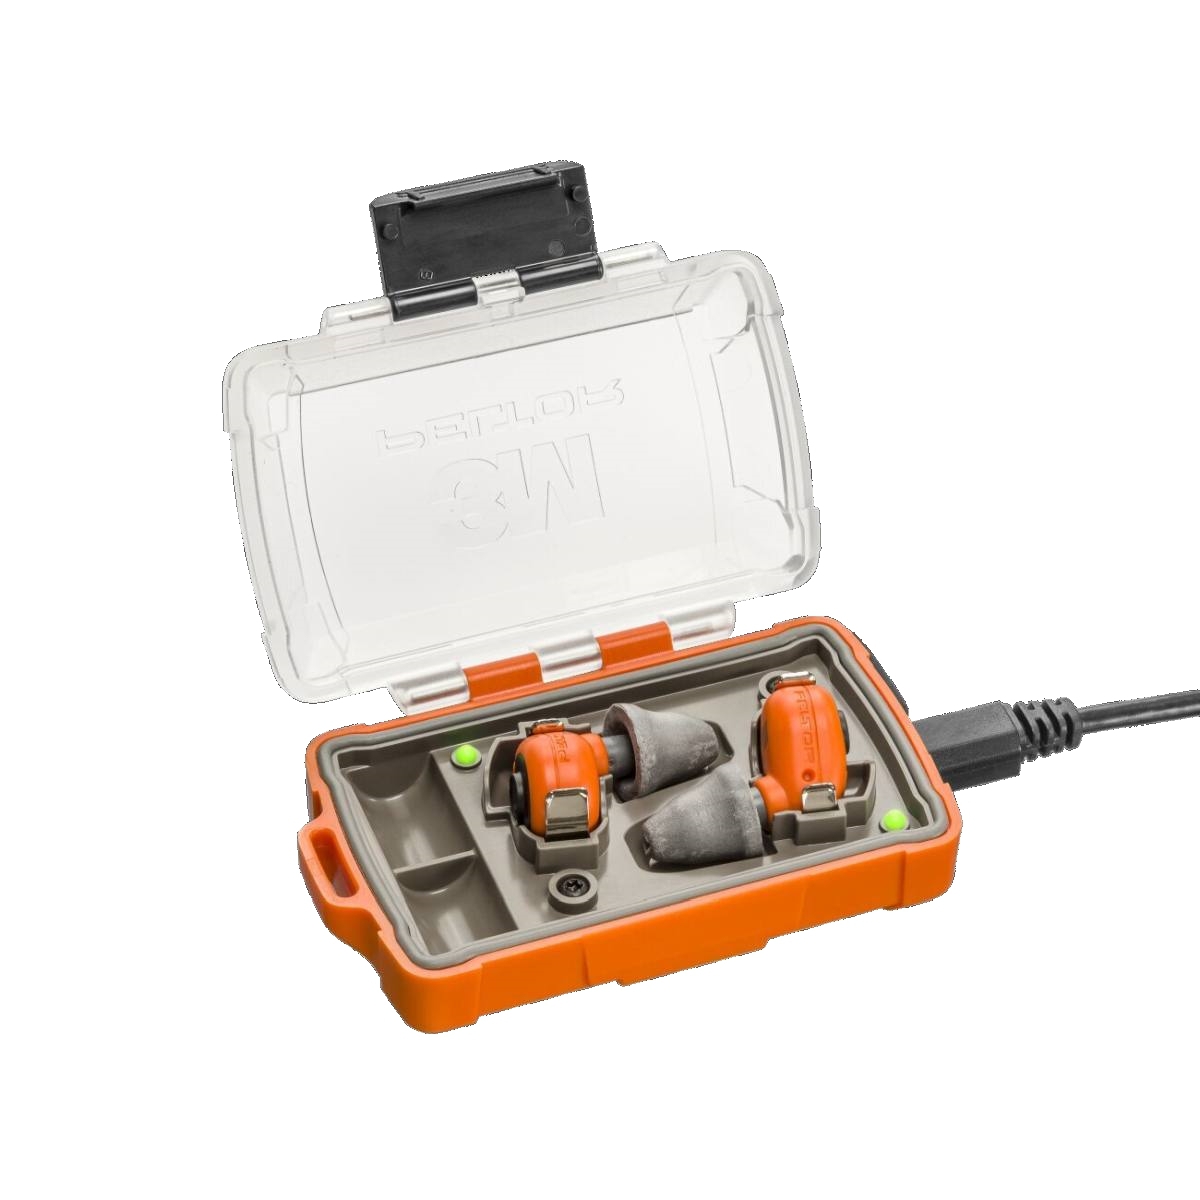 3M PELTOR EEP-100 EU Inserti elettronici arancioni, set: inserti e stazione di ricarica (con coperchio chiuso e porte USB) con grado di protezione IP-54 e impermeabilitÃ 